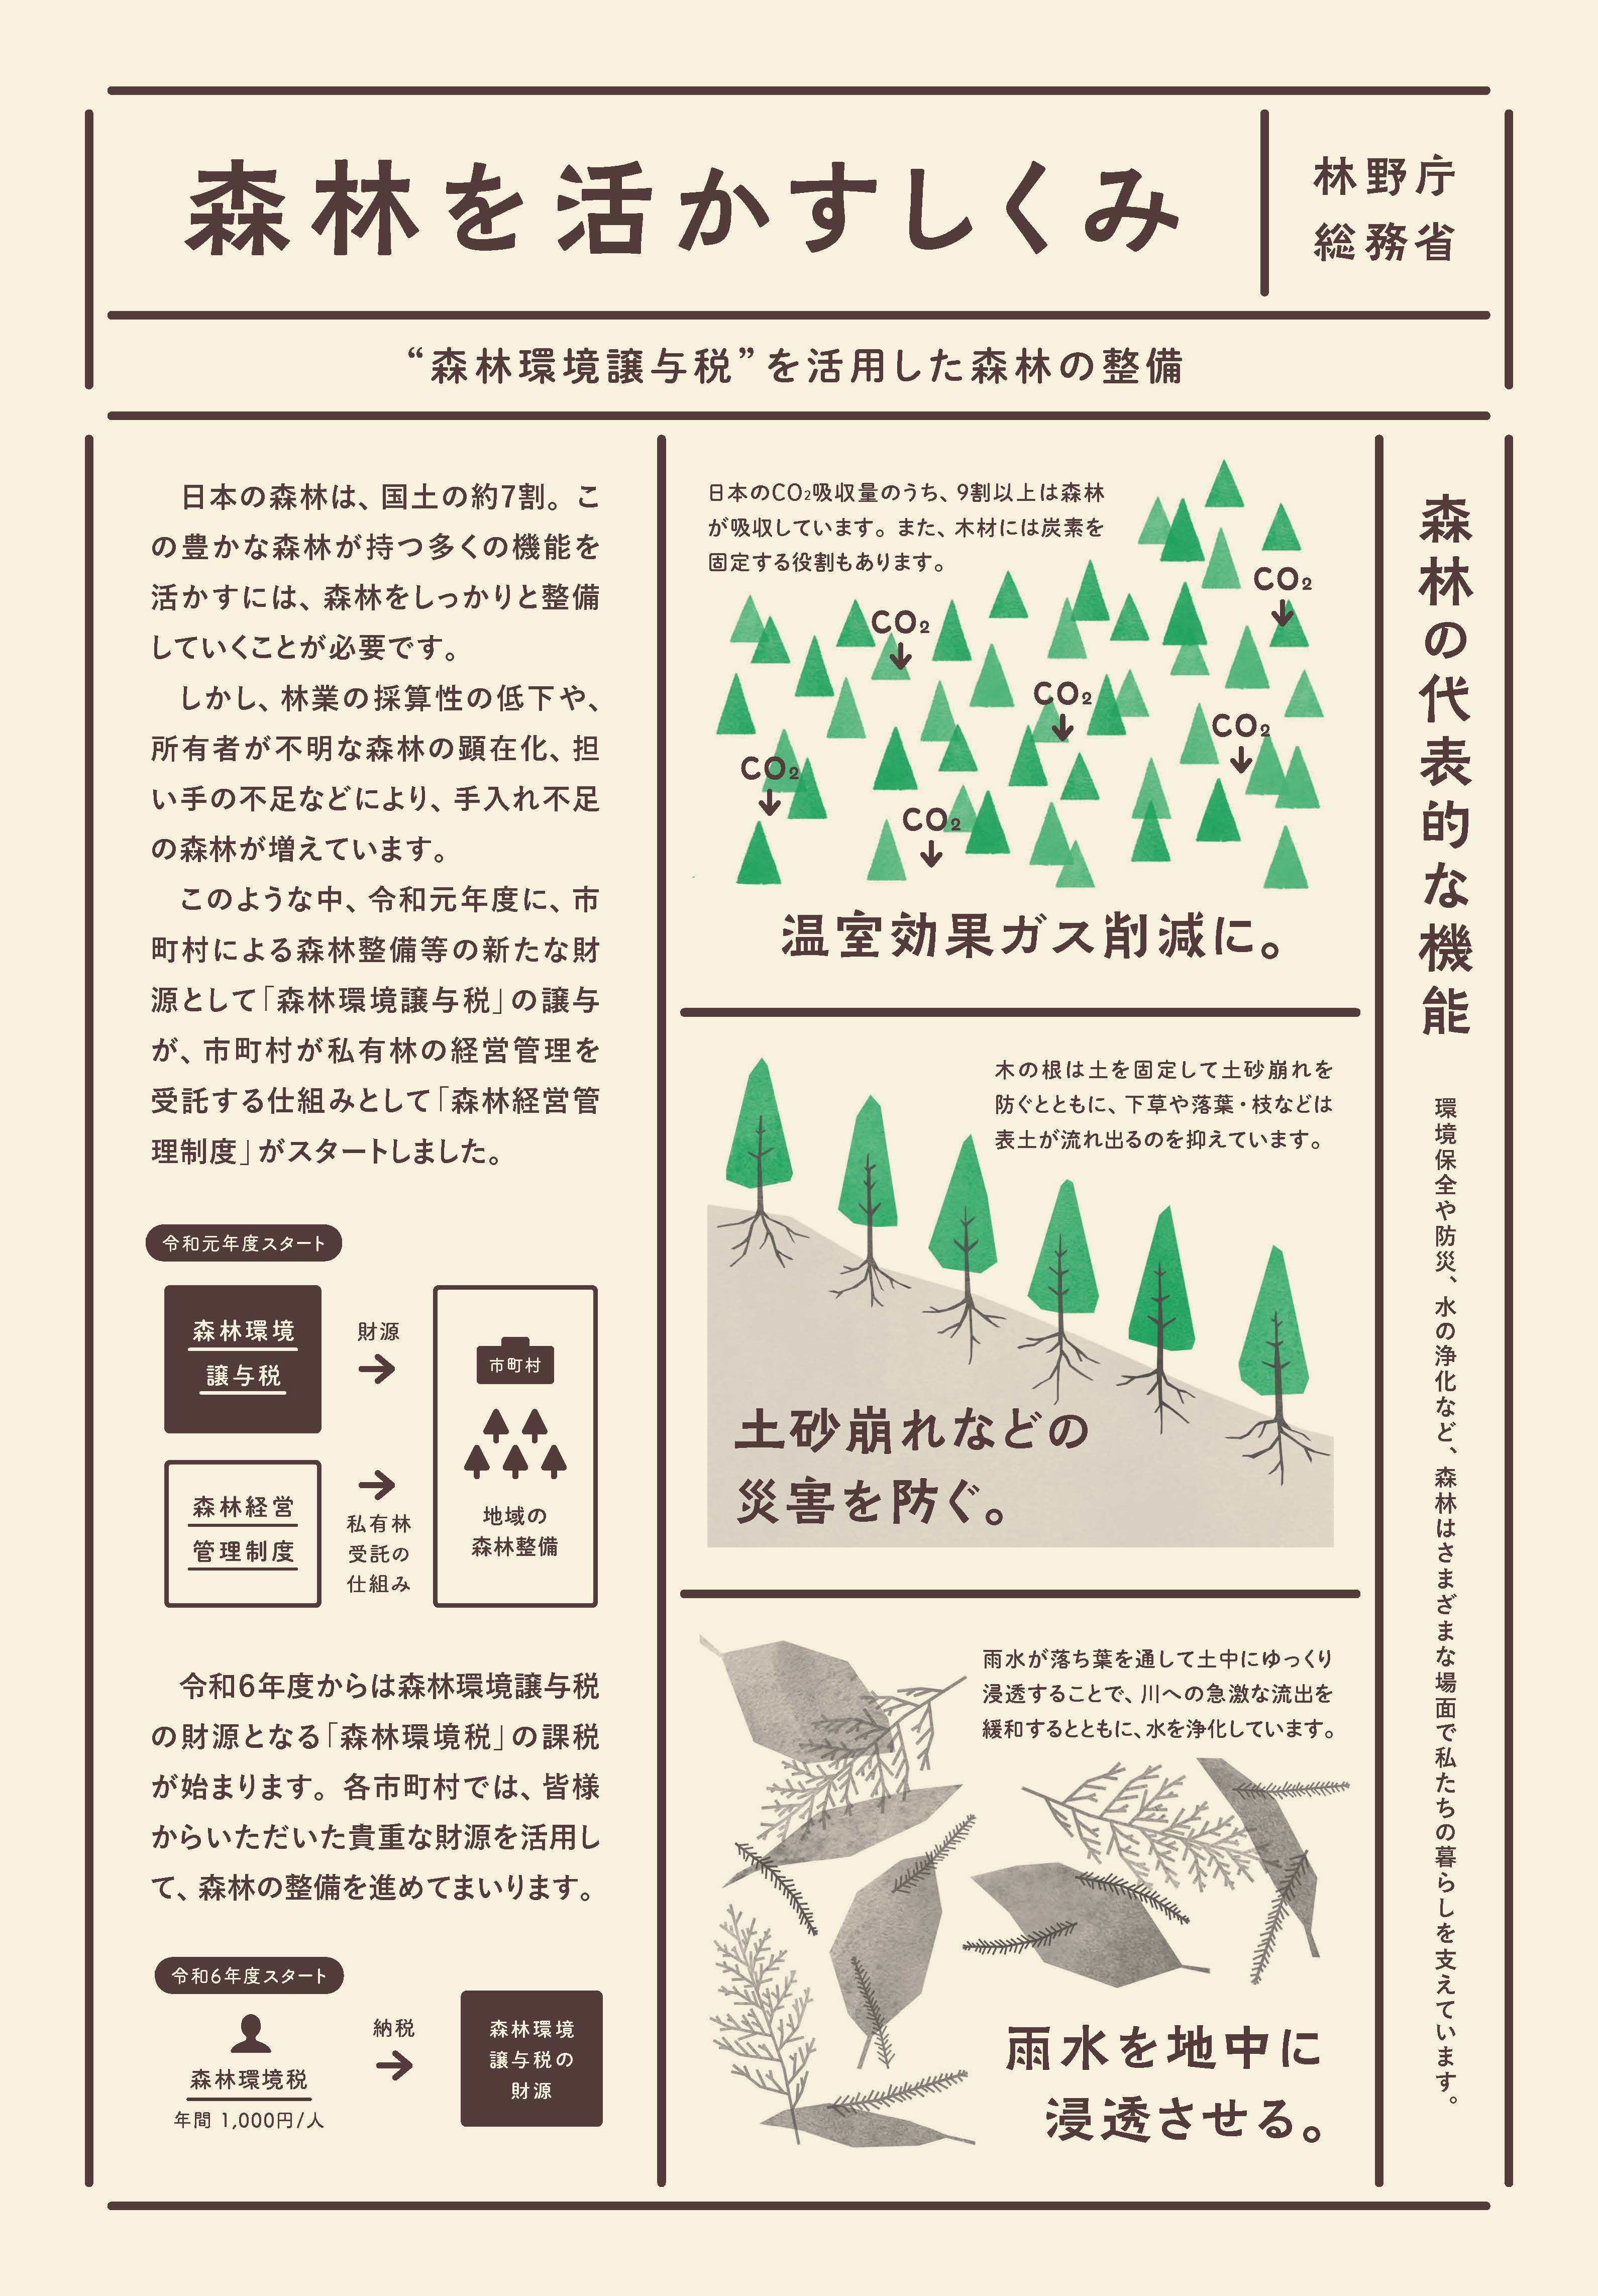 森林環境譲与税を活用した自治体の取組の紹介 Vol.12 愛知県春日井市